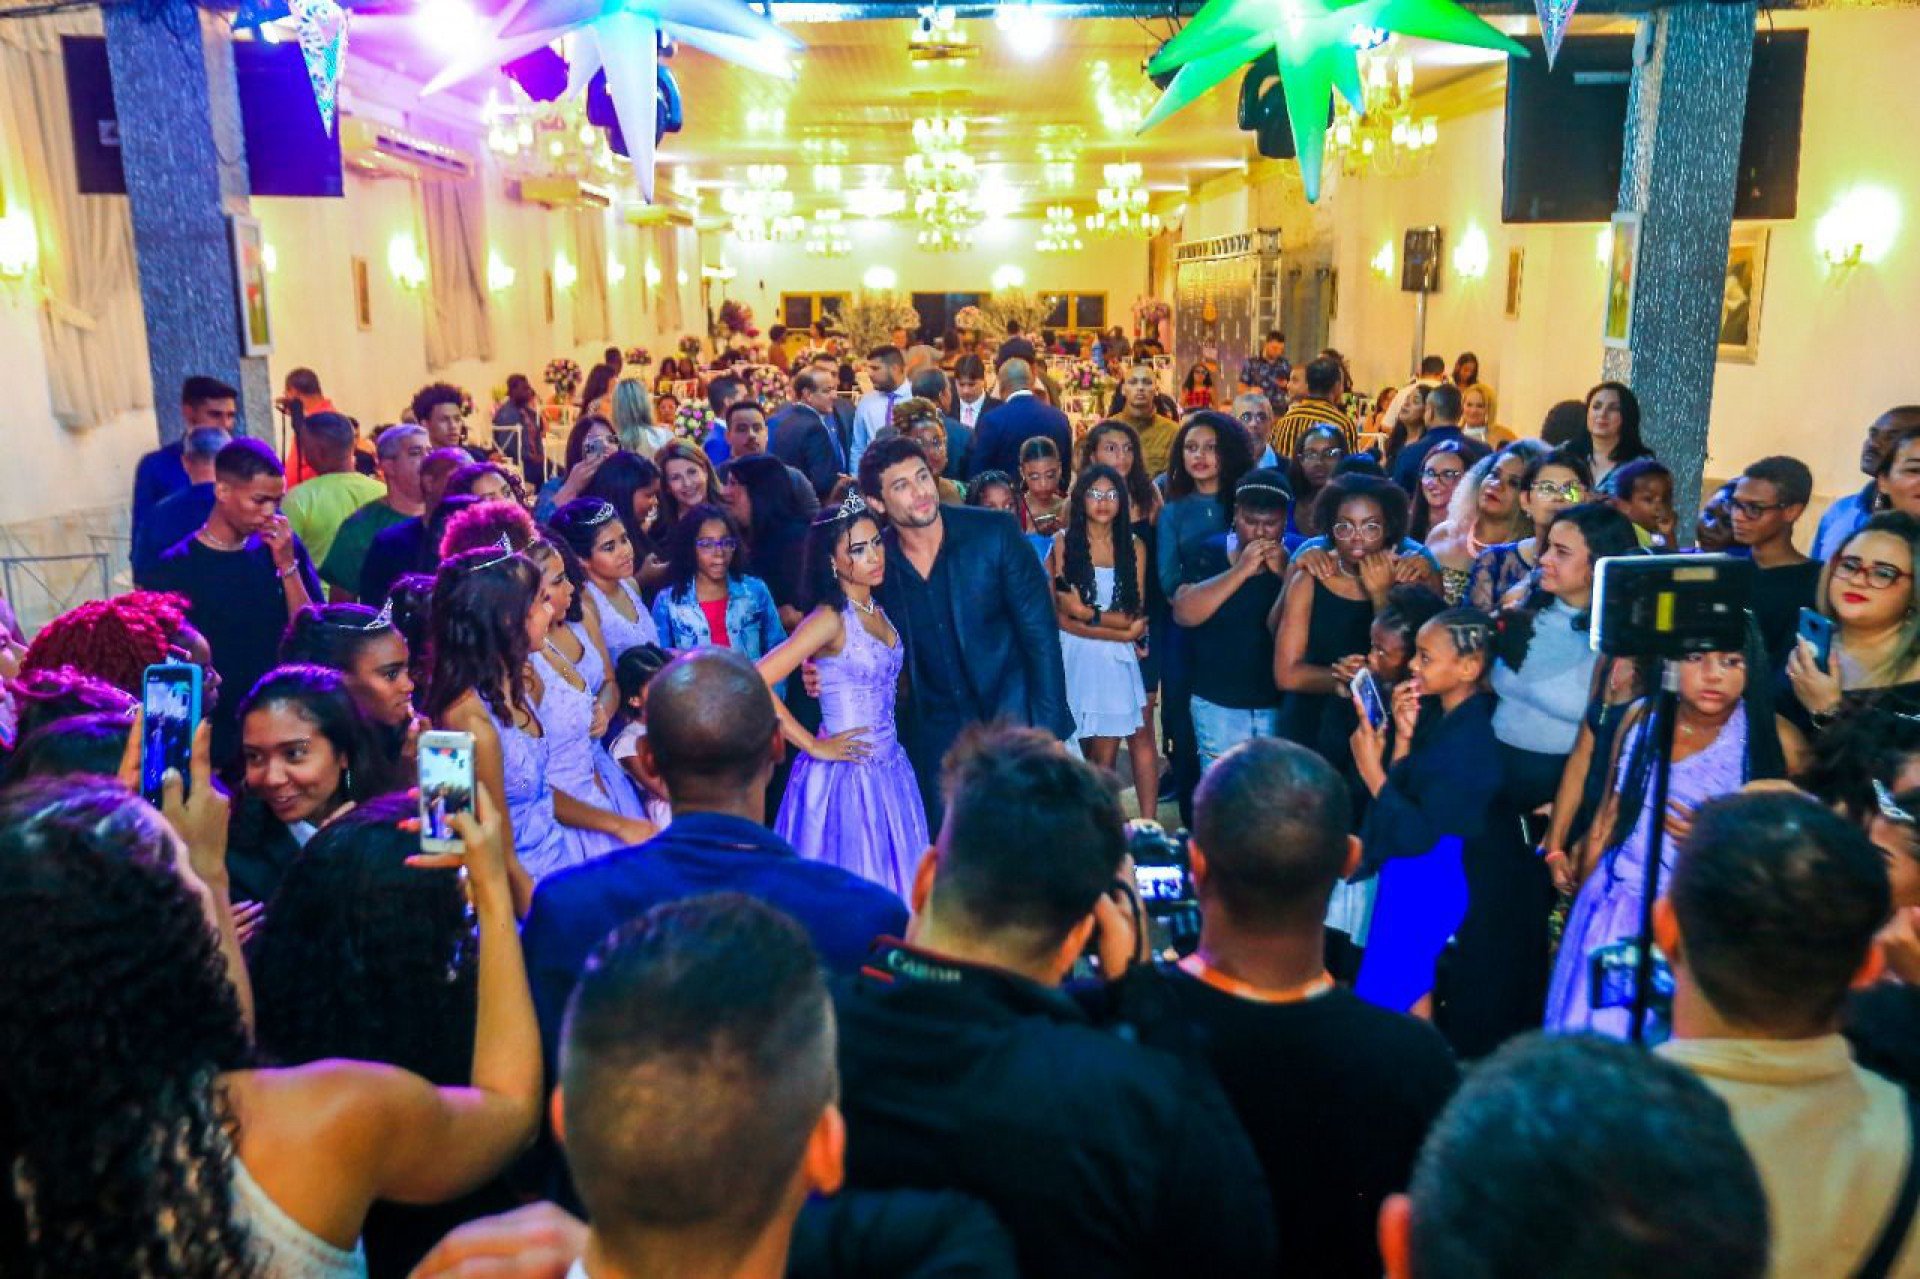 O salão ficou lotado com parentes das aniversariantes e convidados que fizeram questão de cumprimentar as debutantes - Rafael Barreto / PMBR